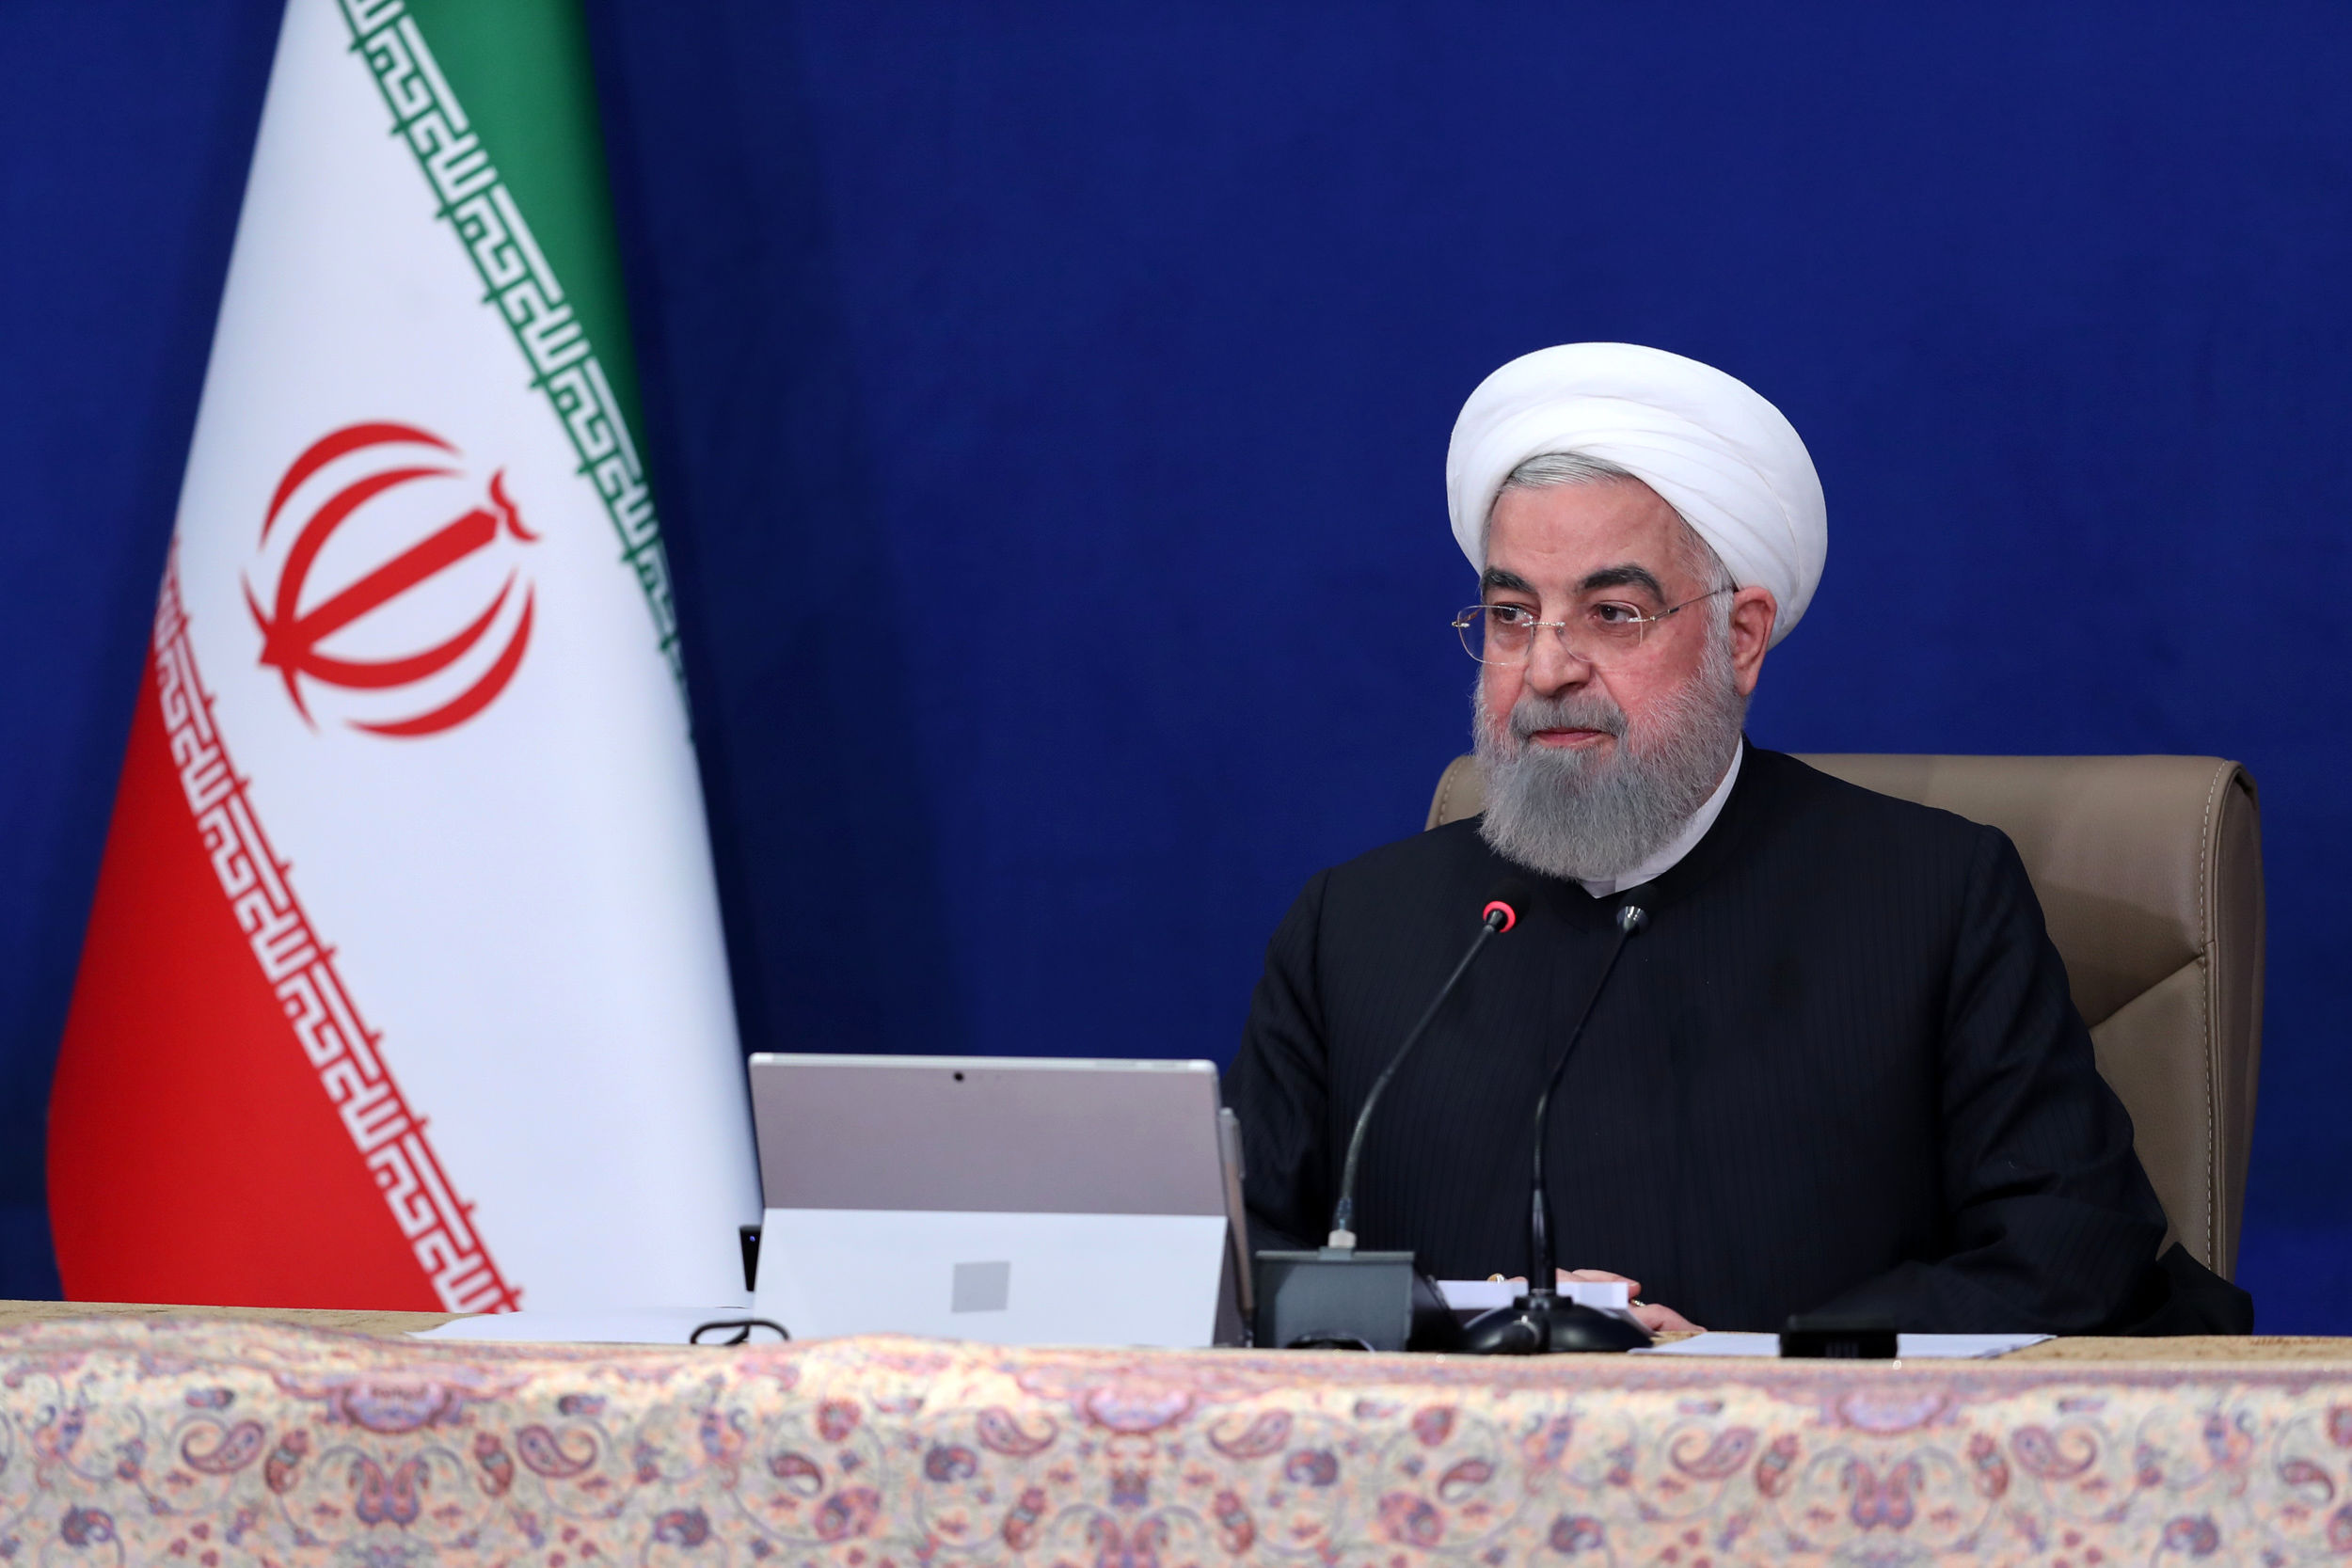 درخواست مهم روحانی ازکاندیدای انتخابات ریاست جمهوری